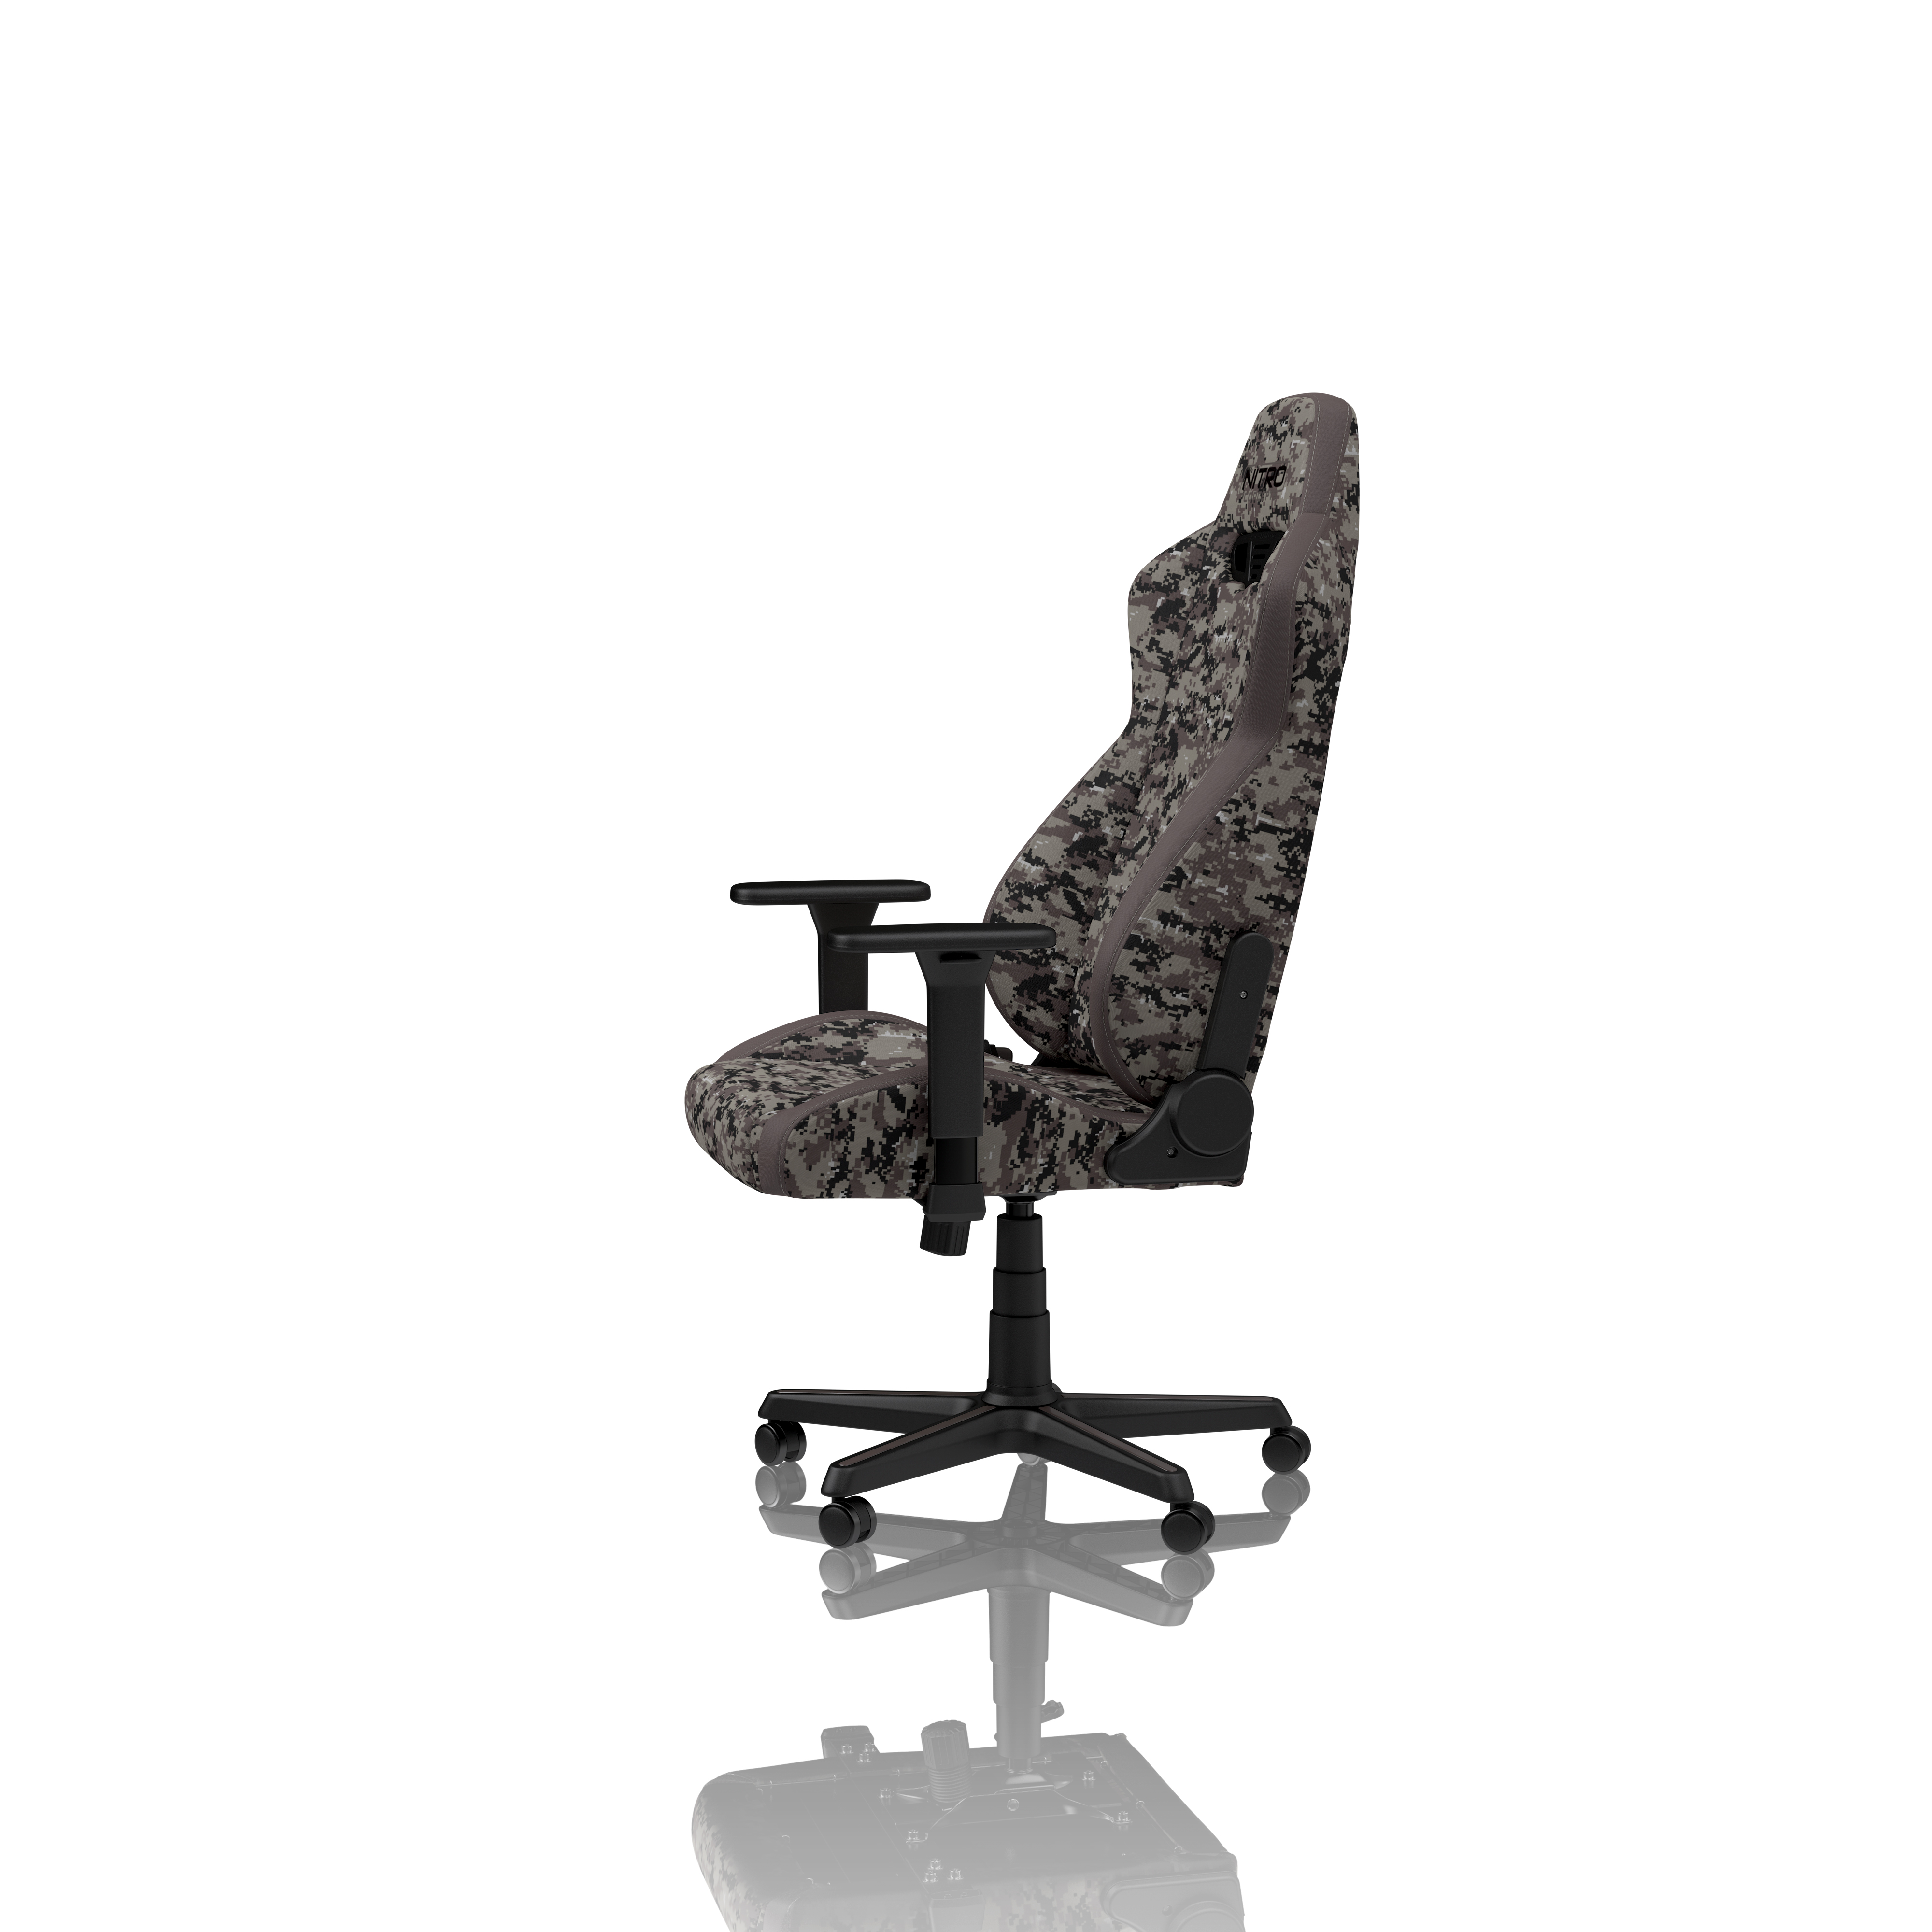 Nitro Concepts - S300 Gaming Chair Urban Camo